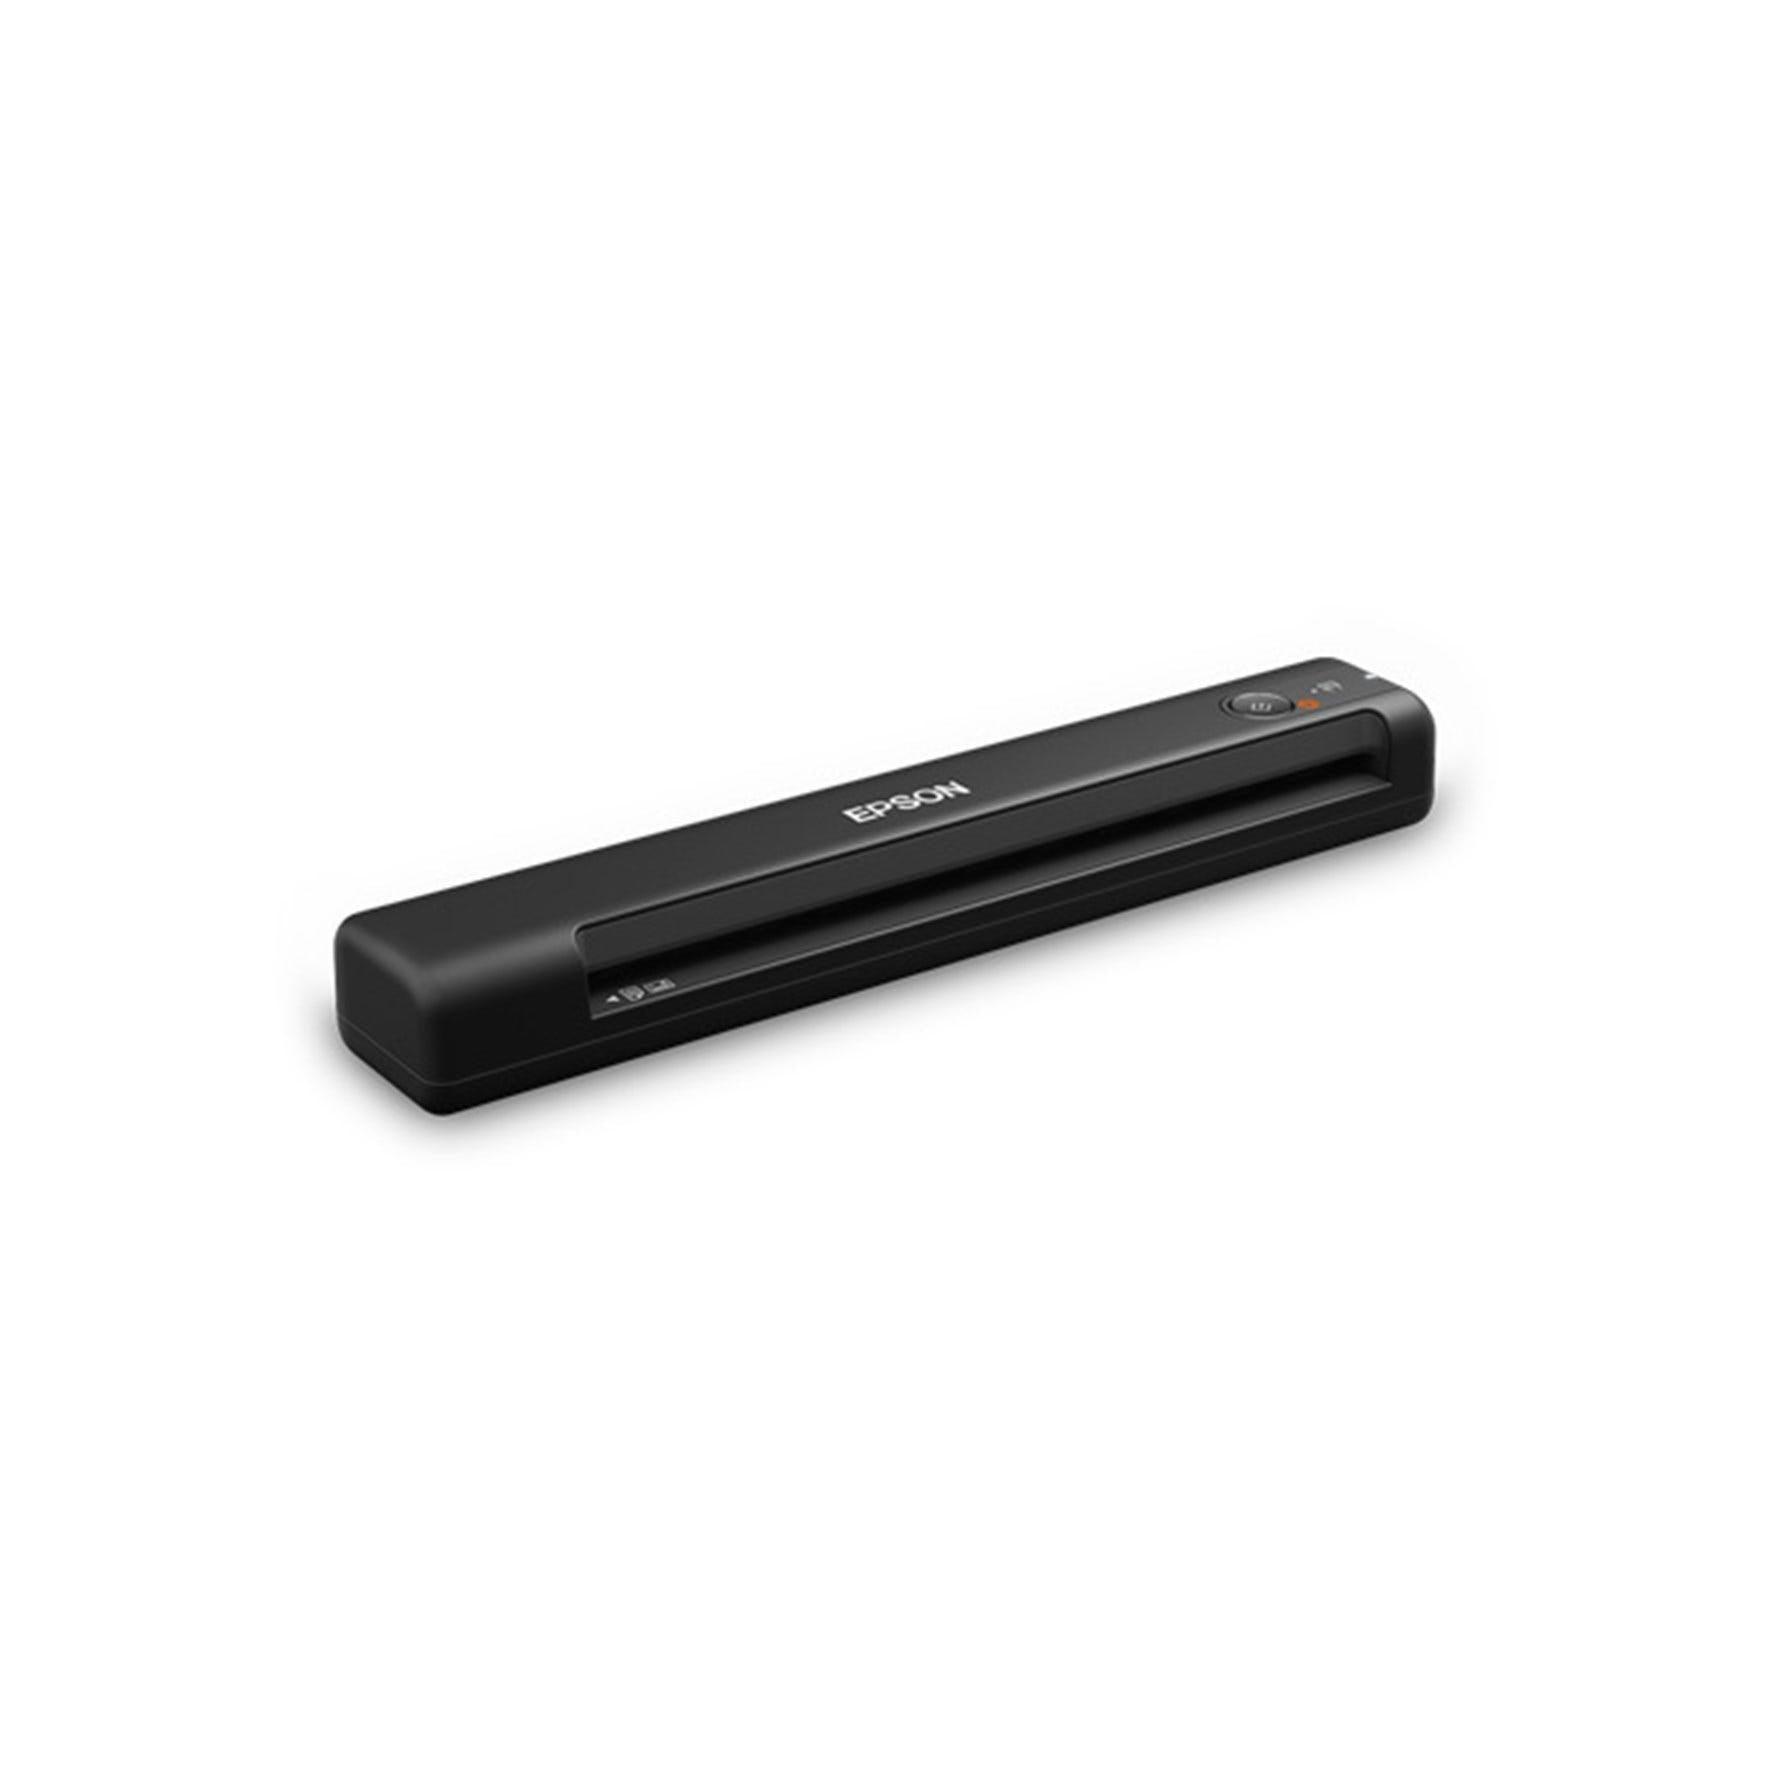 Scanner Epson WorkForce ES-50 USB 2.0 TWAIN OCR B11B252201 - Mega Market